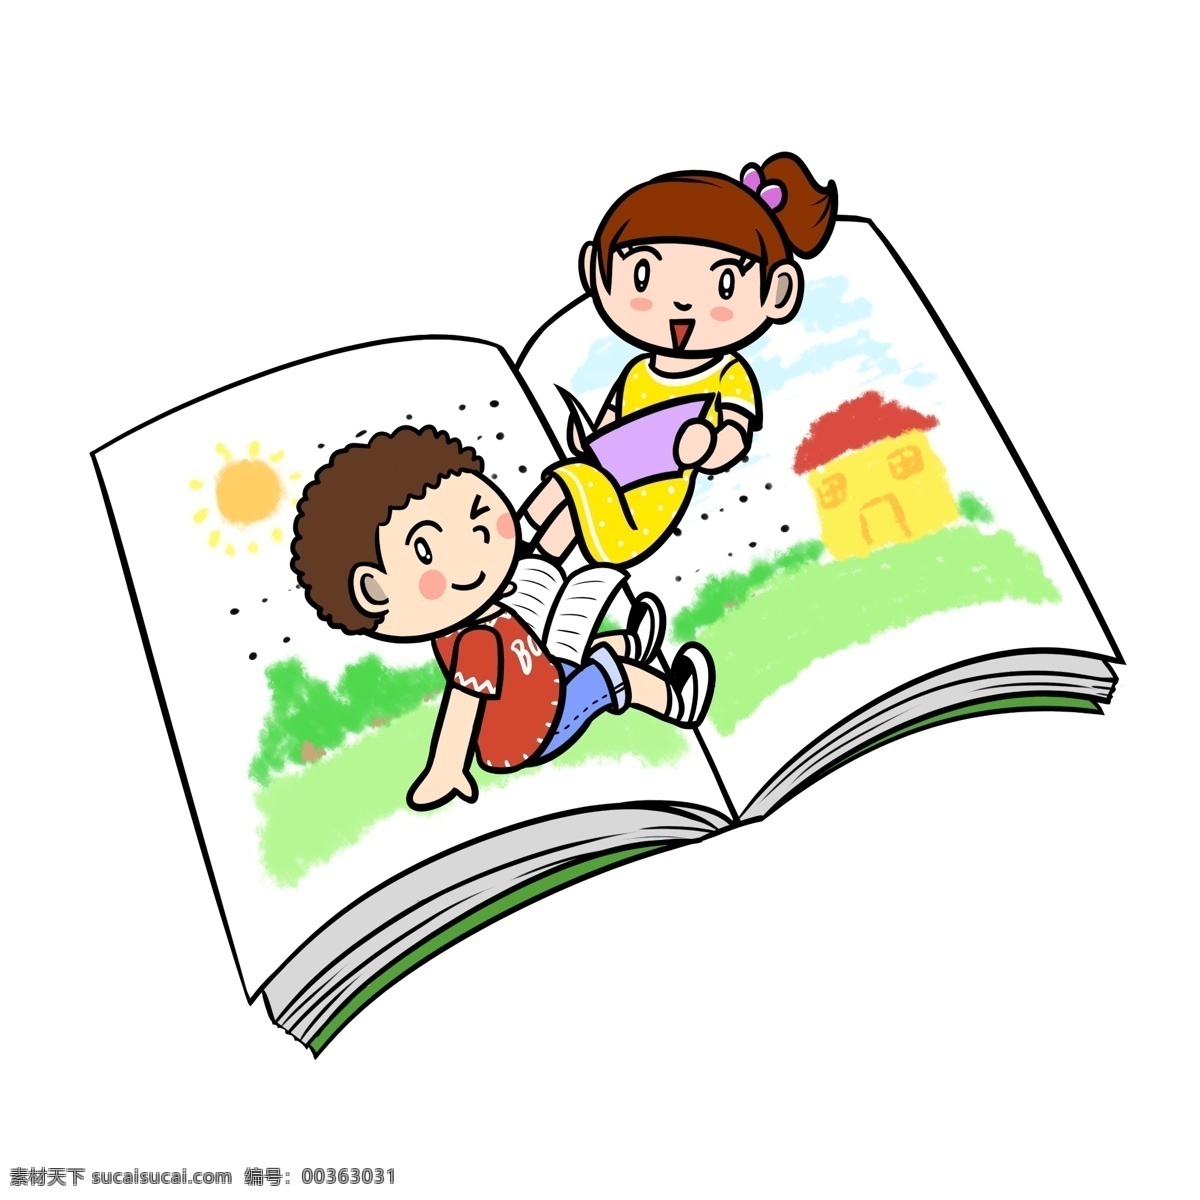 卡通 世界 读书 日 阅读 图书 透明 底 世界读书日 看书 读书日 卡通儿童 读书卡通 卡通图书